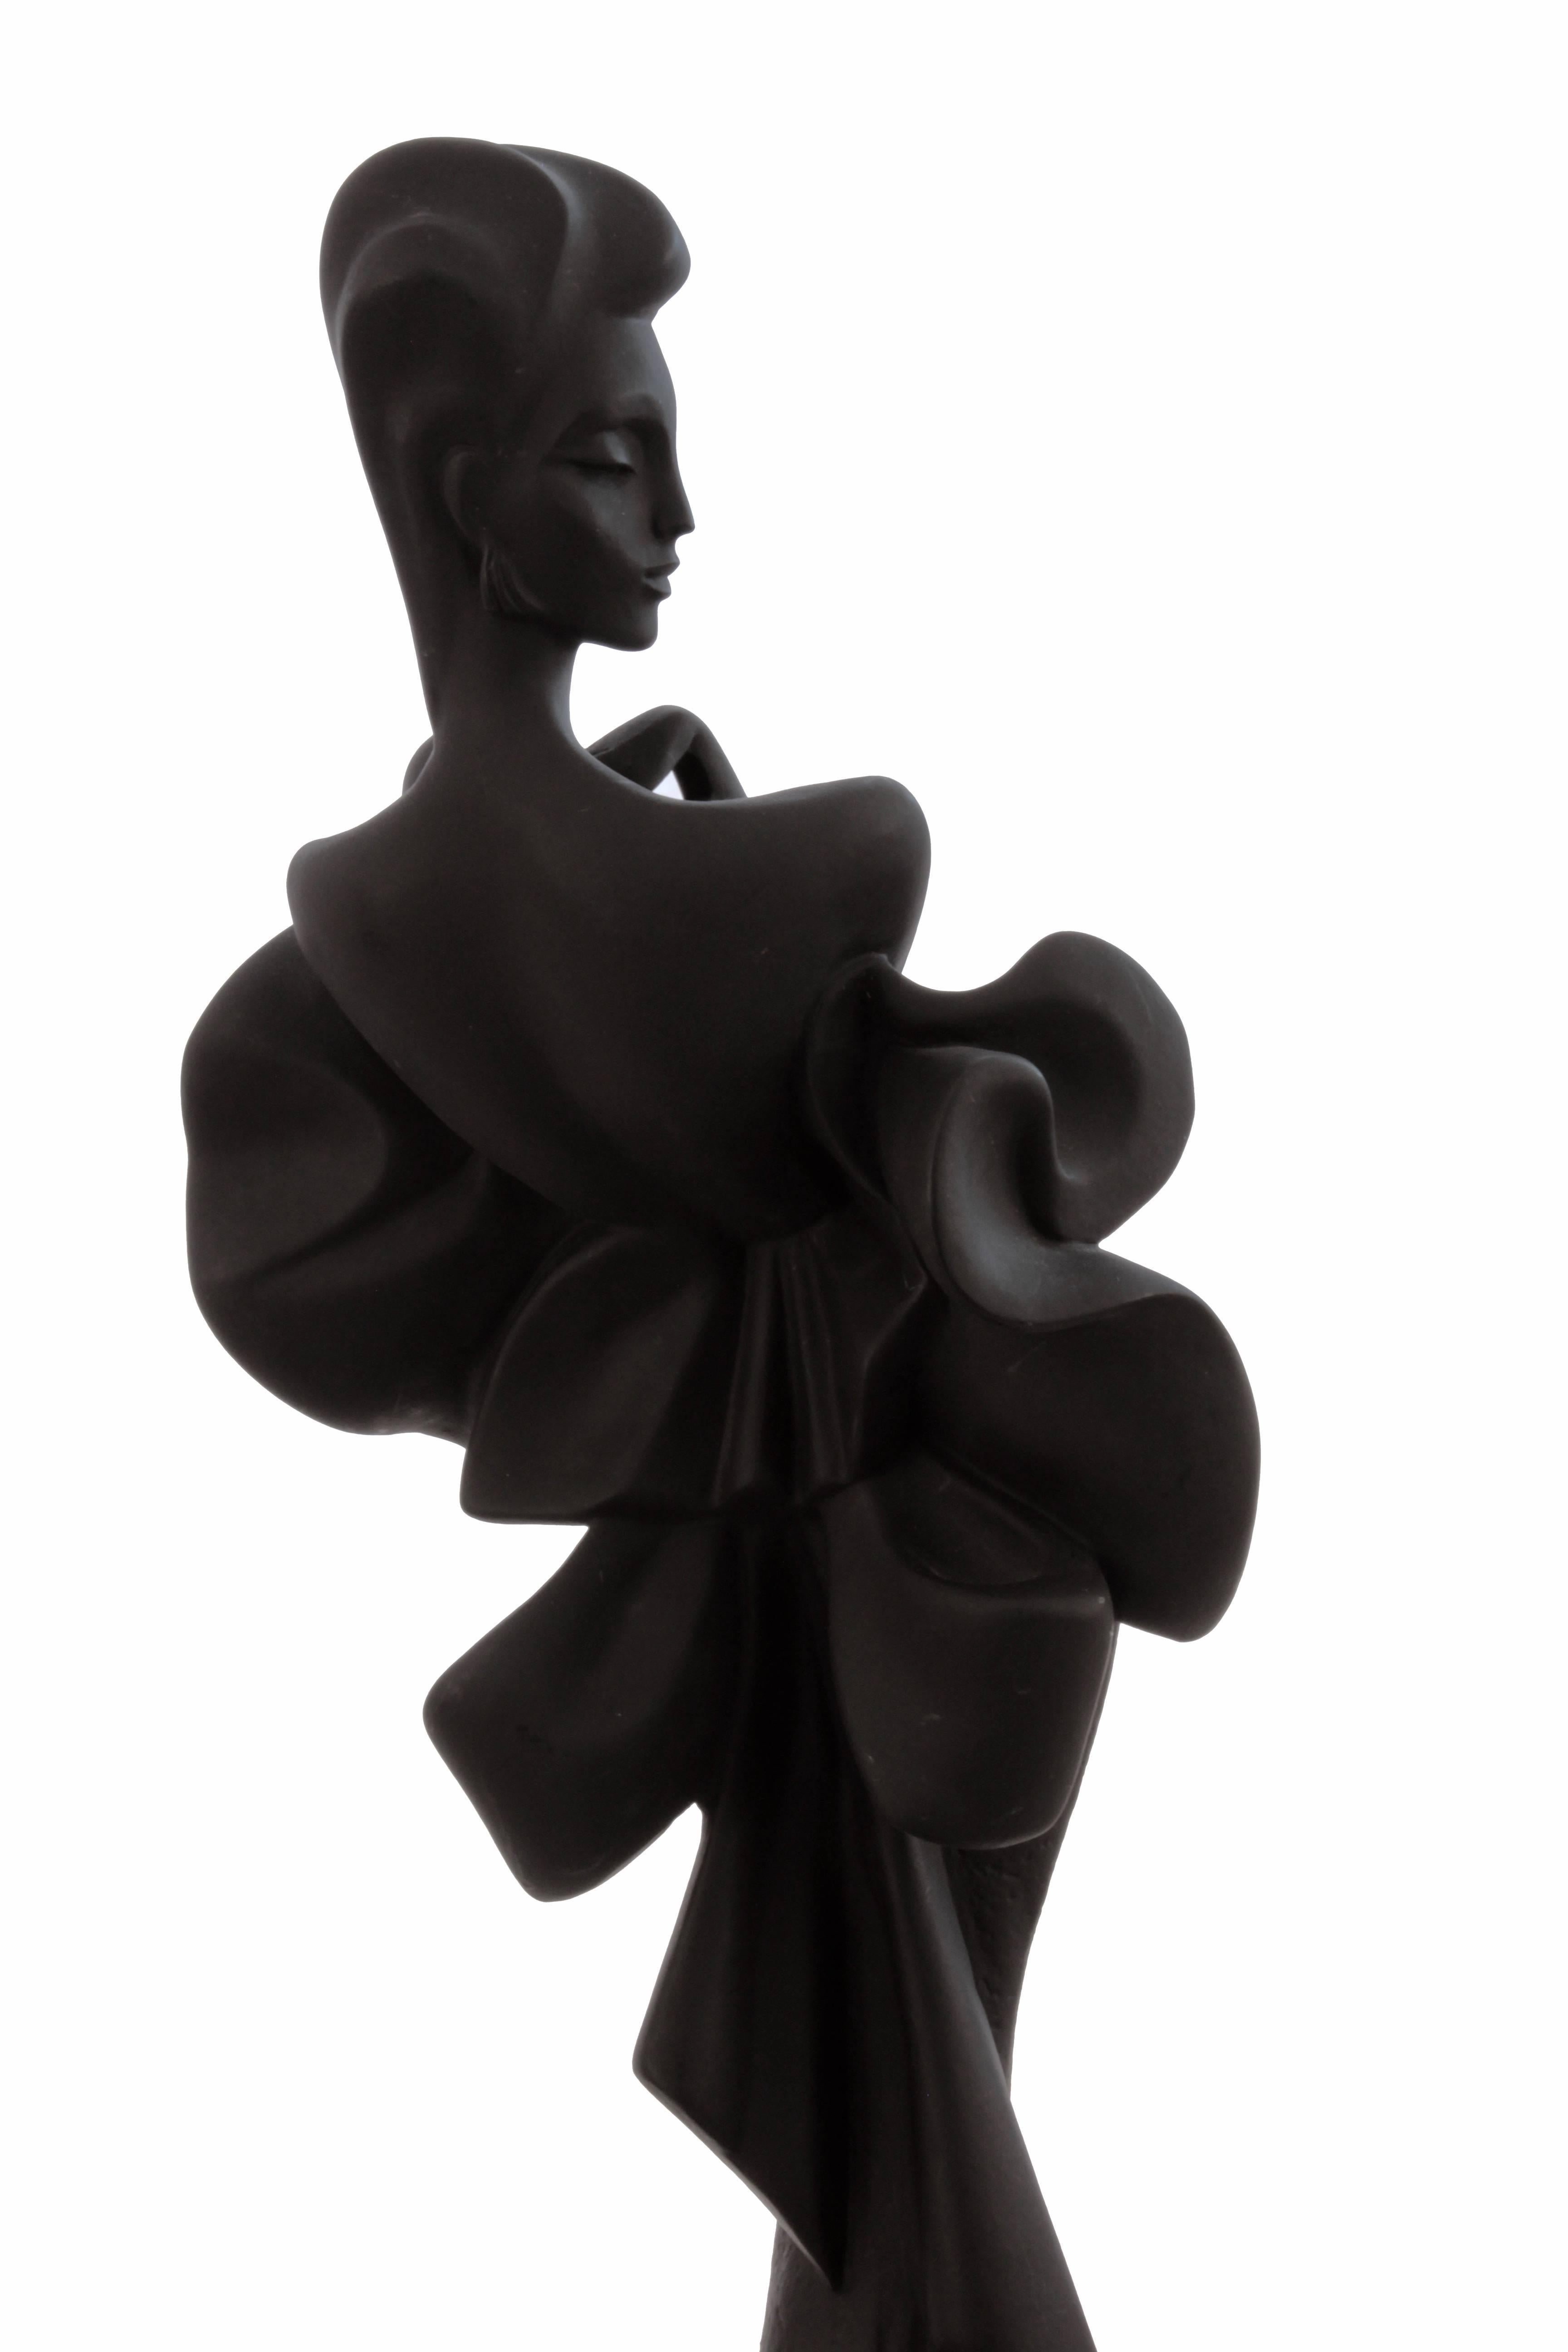 Alexsander Danel Austin Productions Inc Orchide Sculpture AP3590 Fashionista 90s 3